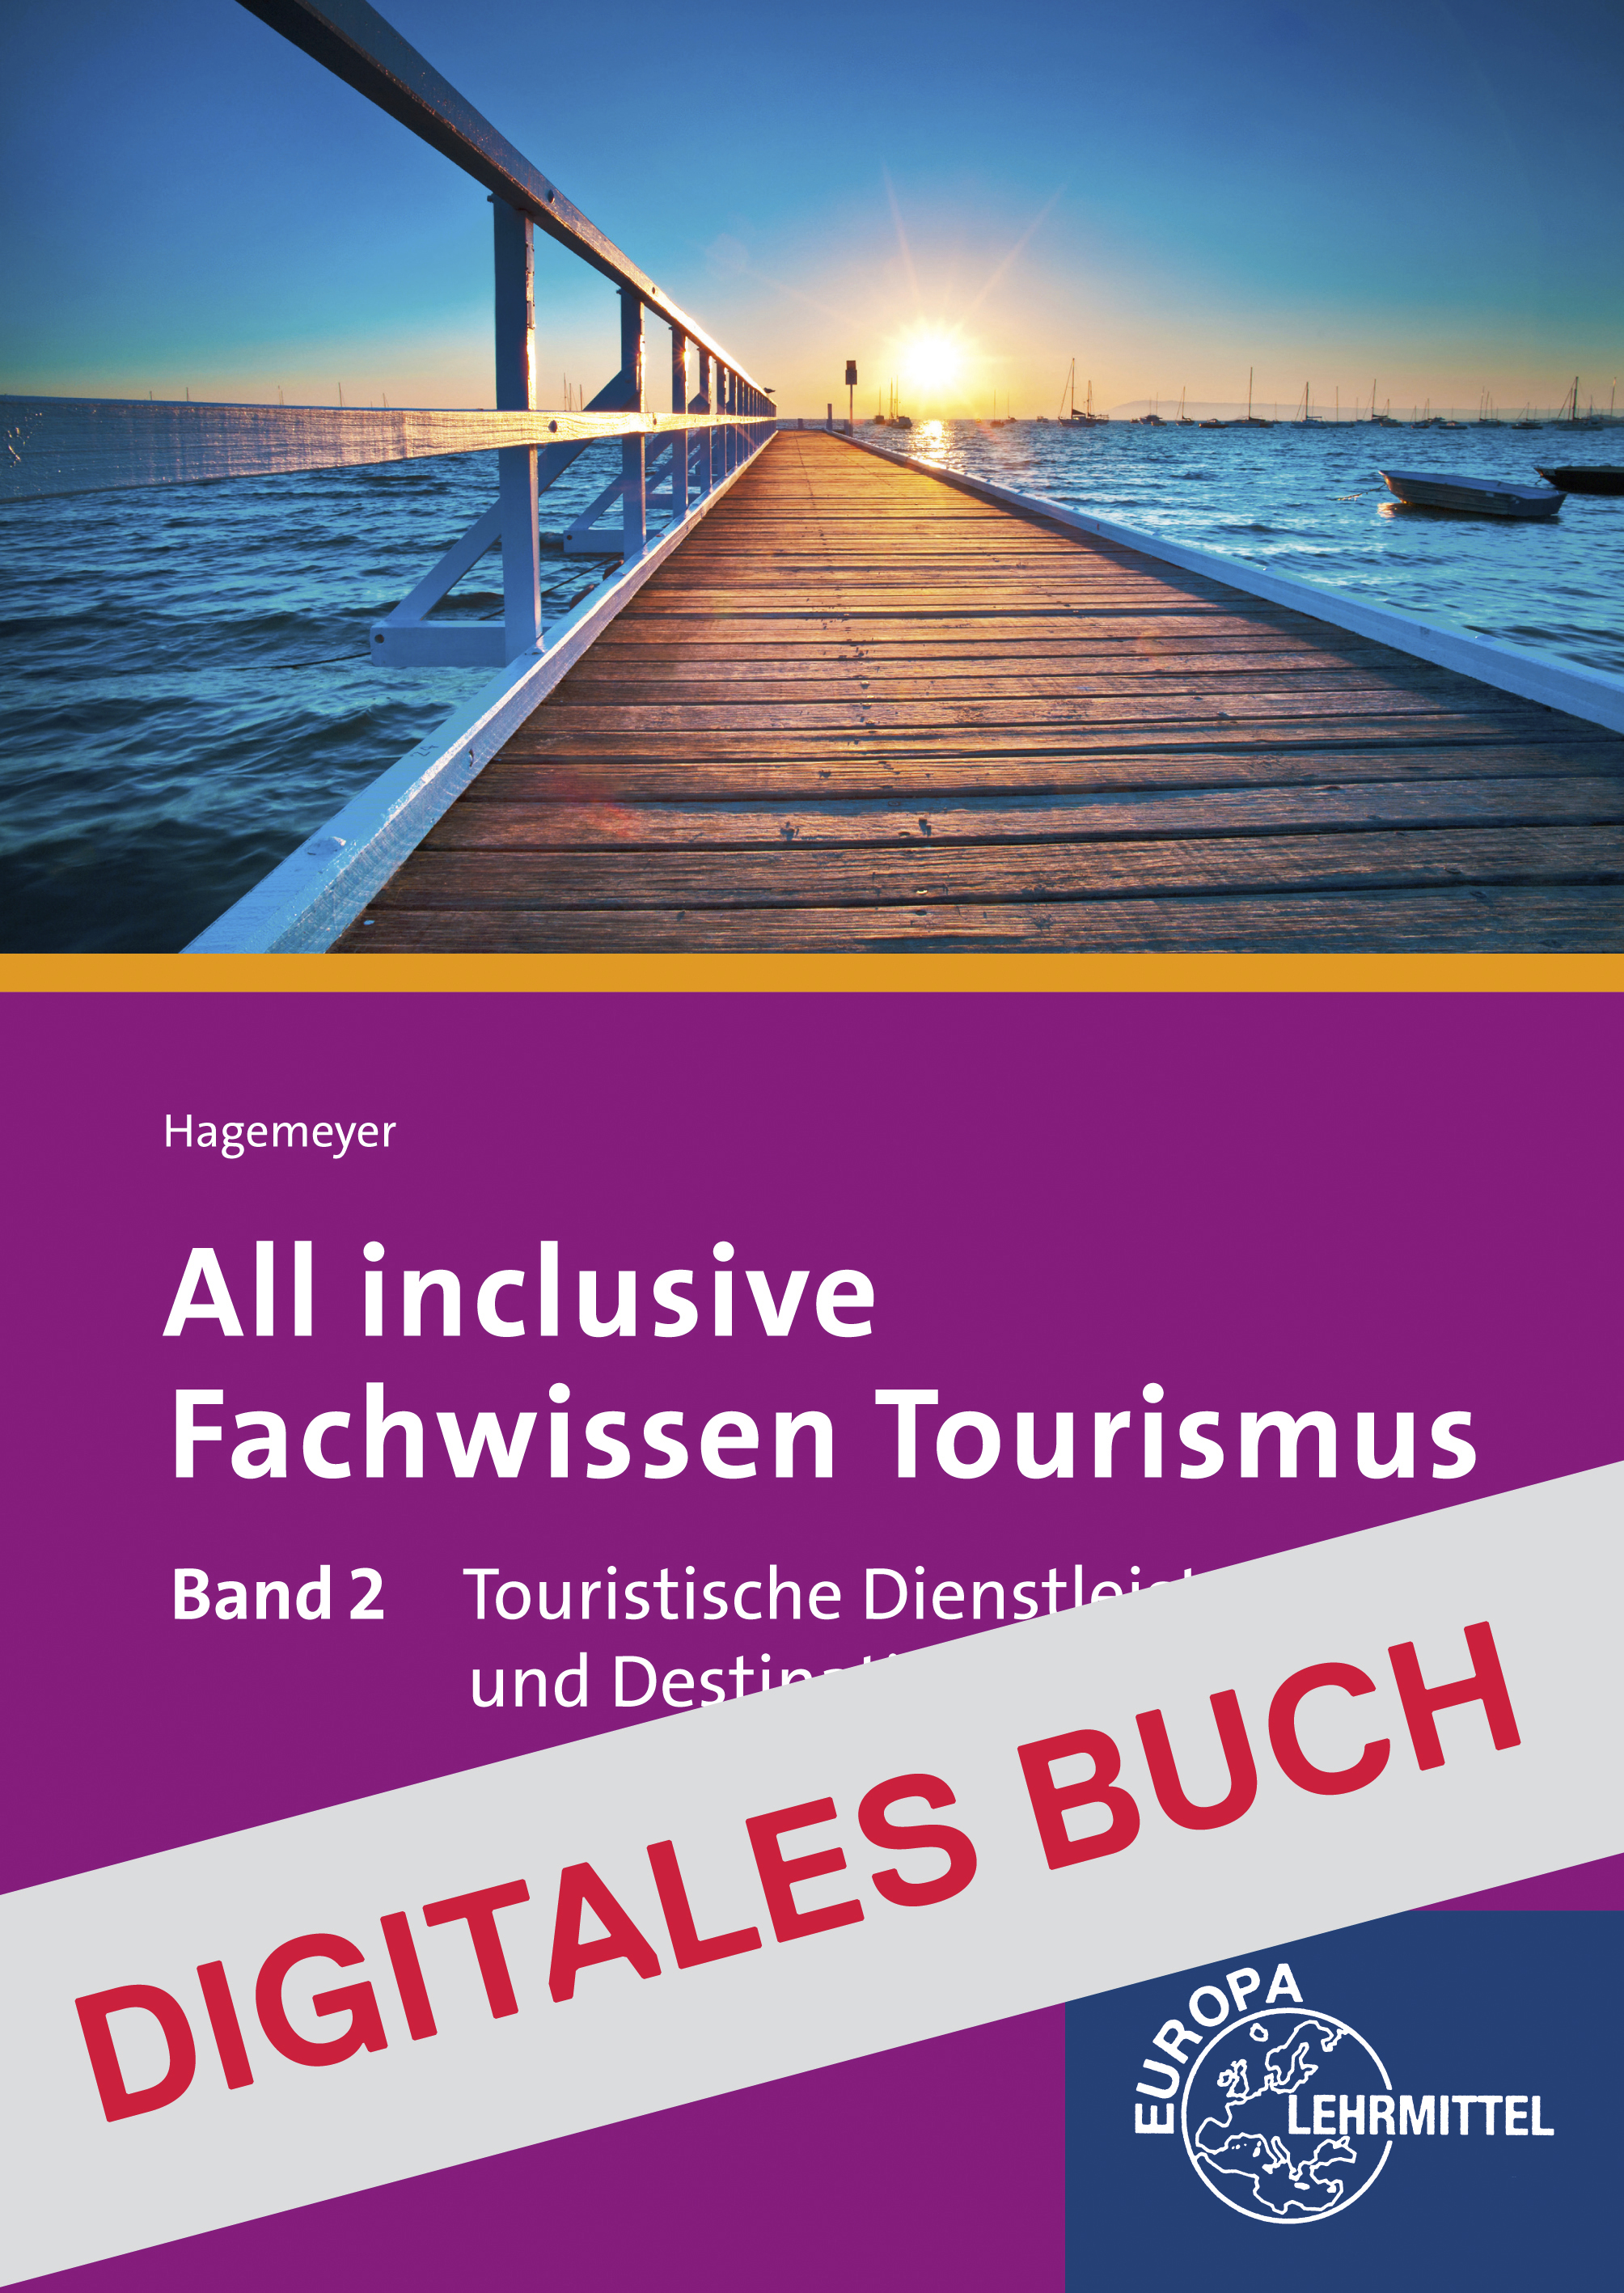 All inclusive - Fachwissen Tourismus Band 2 - Digitales Buch